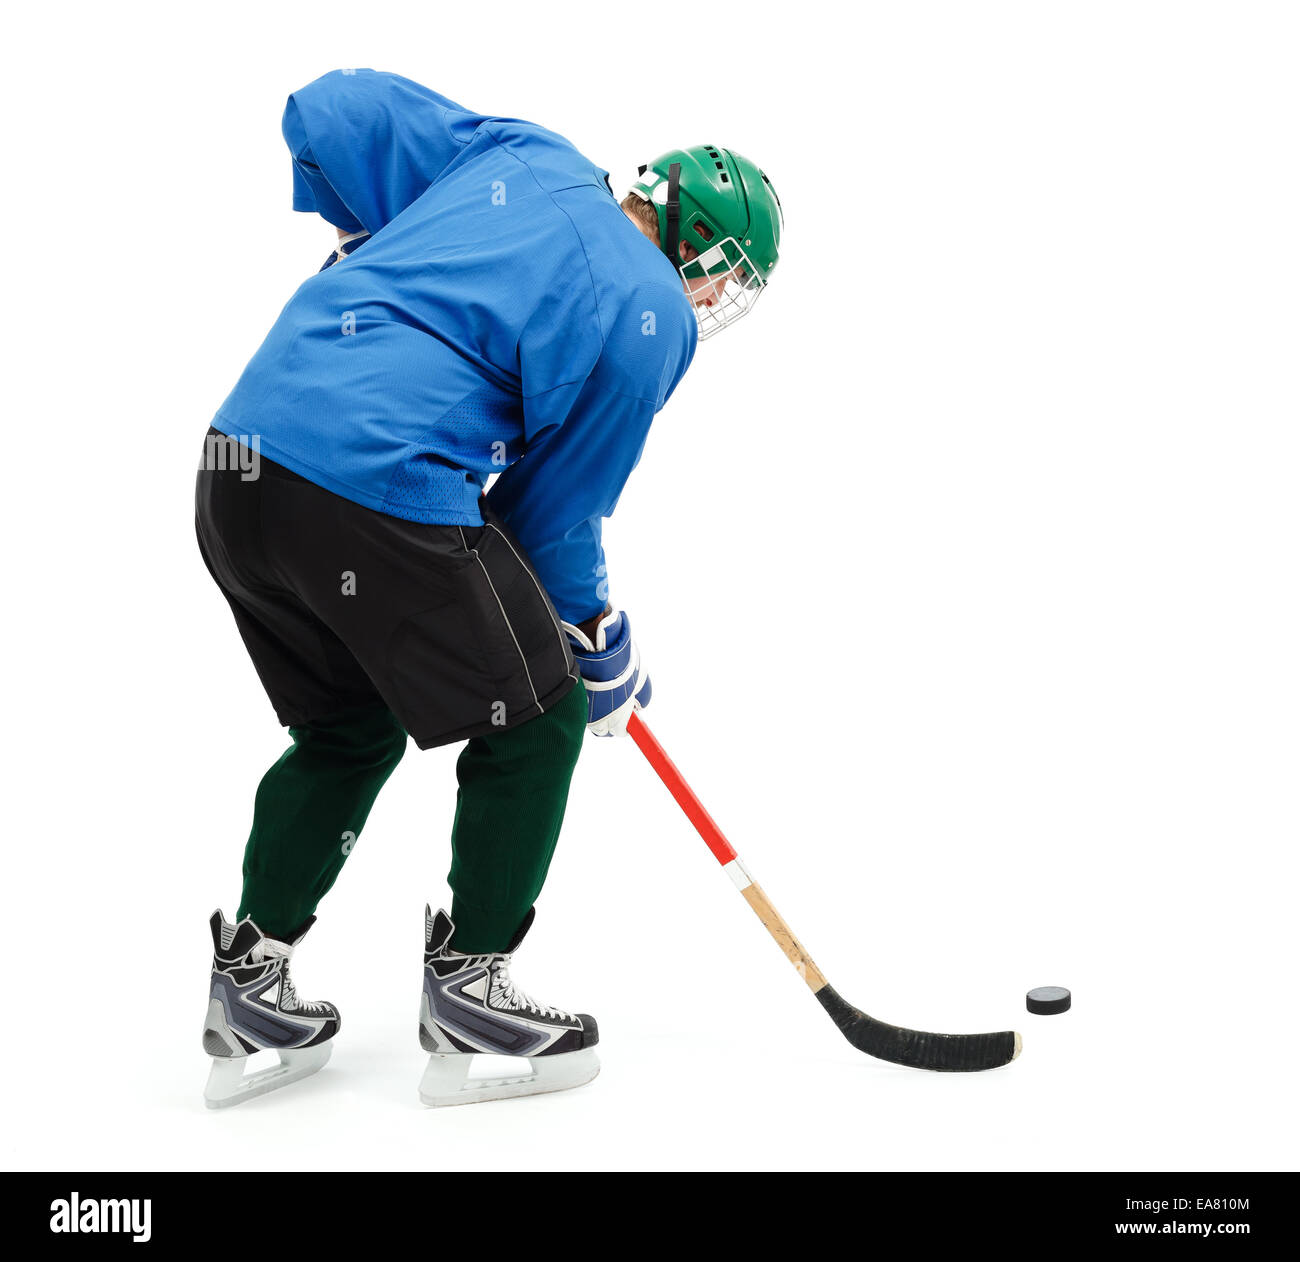 En hockey sur glace usure bleu et vert casque Banque D'Images